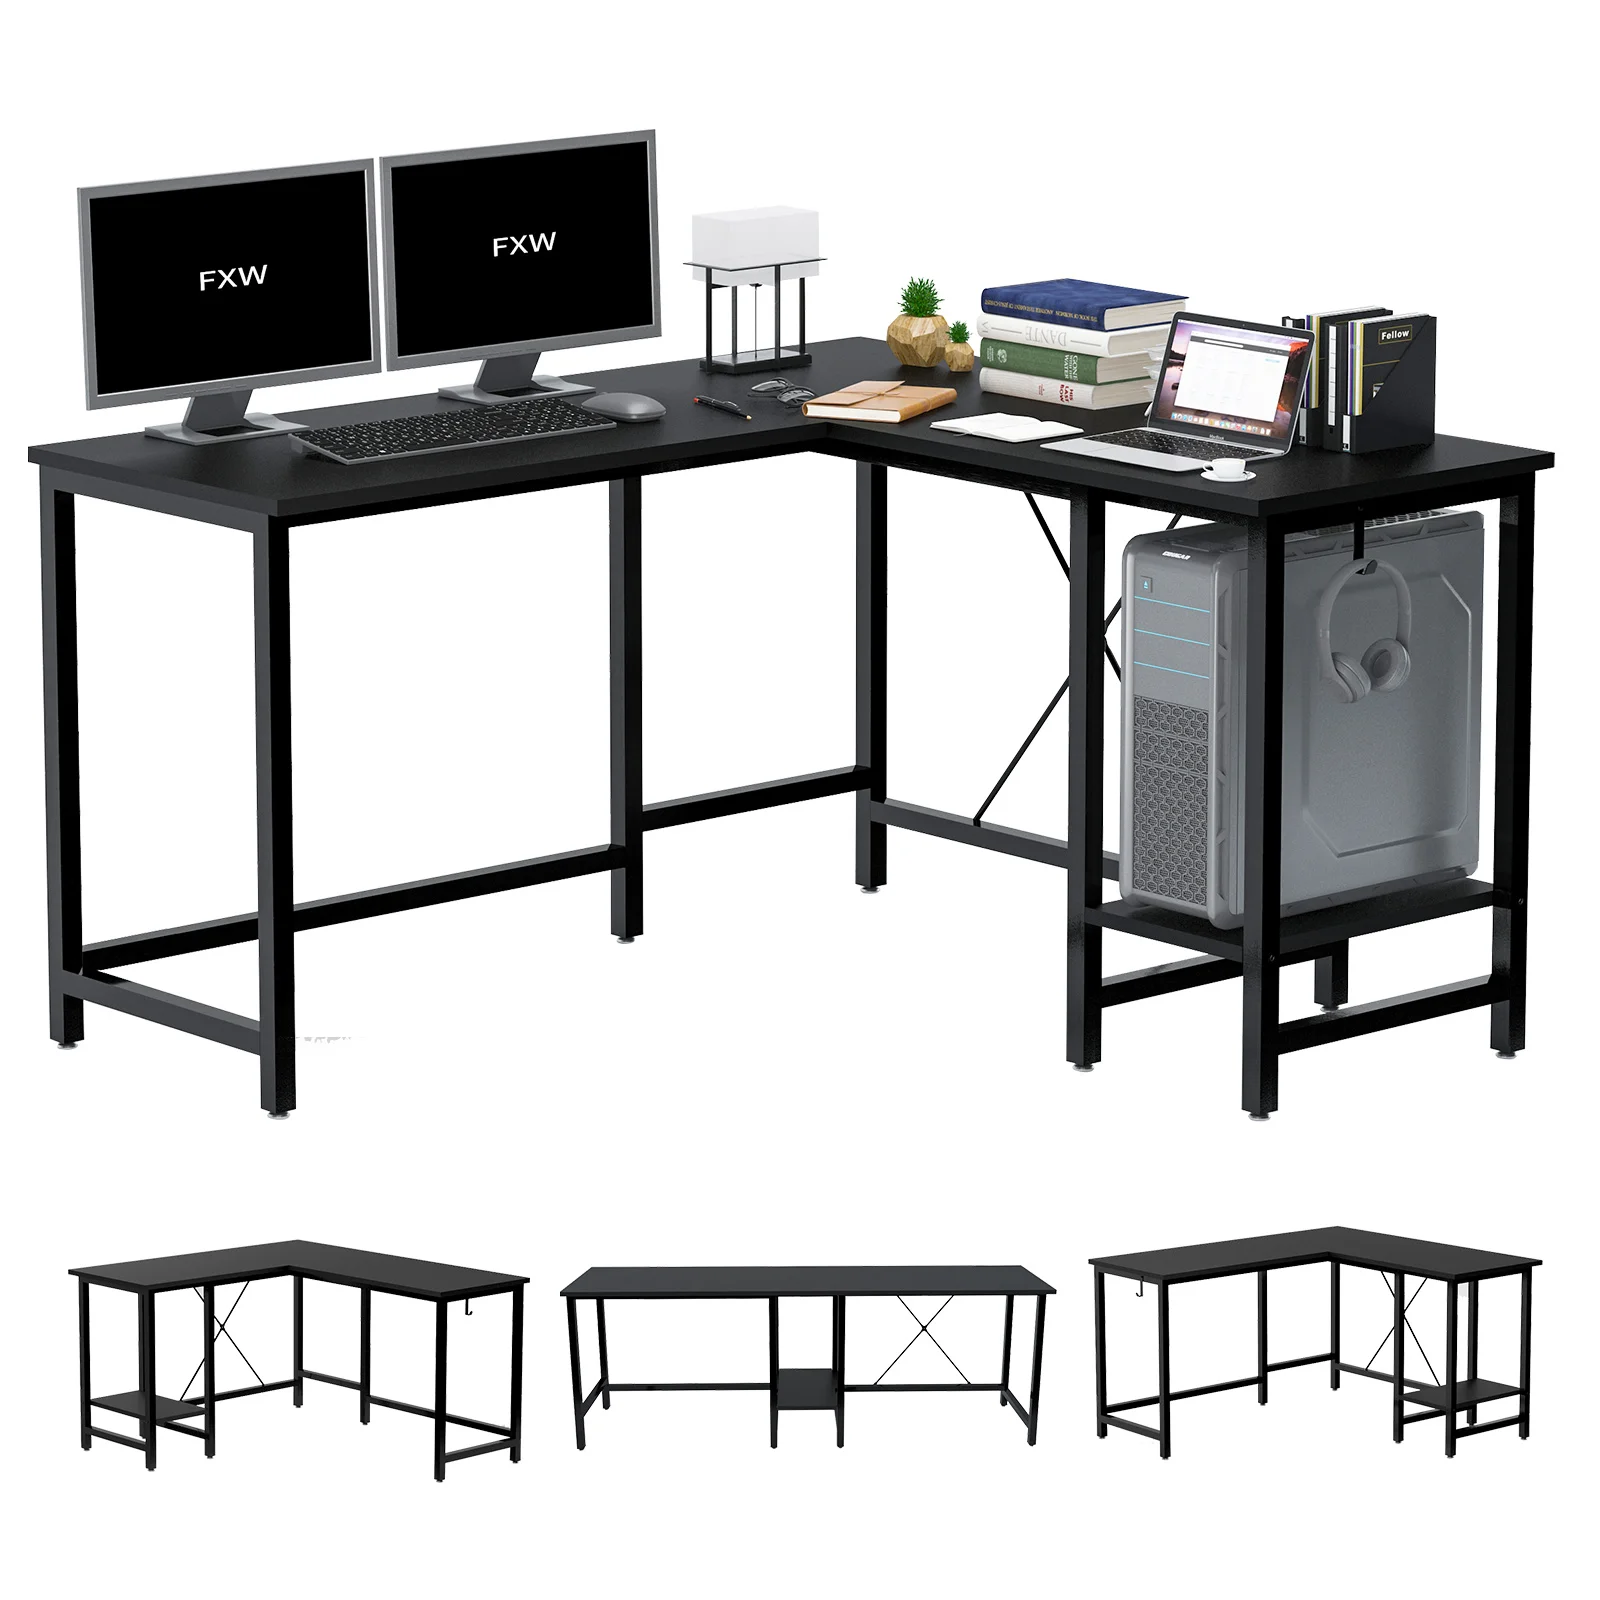 

Регулируемый угловой стол L-образной формы, длинный прямой компьютерный стол для ноутбука, ПК, для дома и офиса, рабочая станция для письма, р...